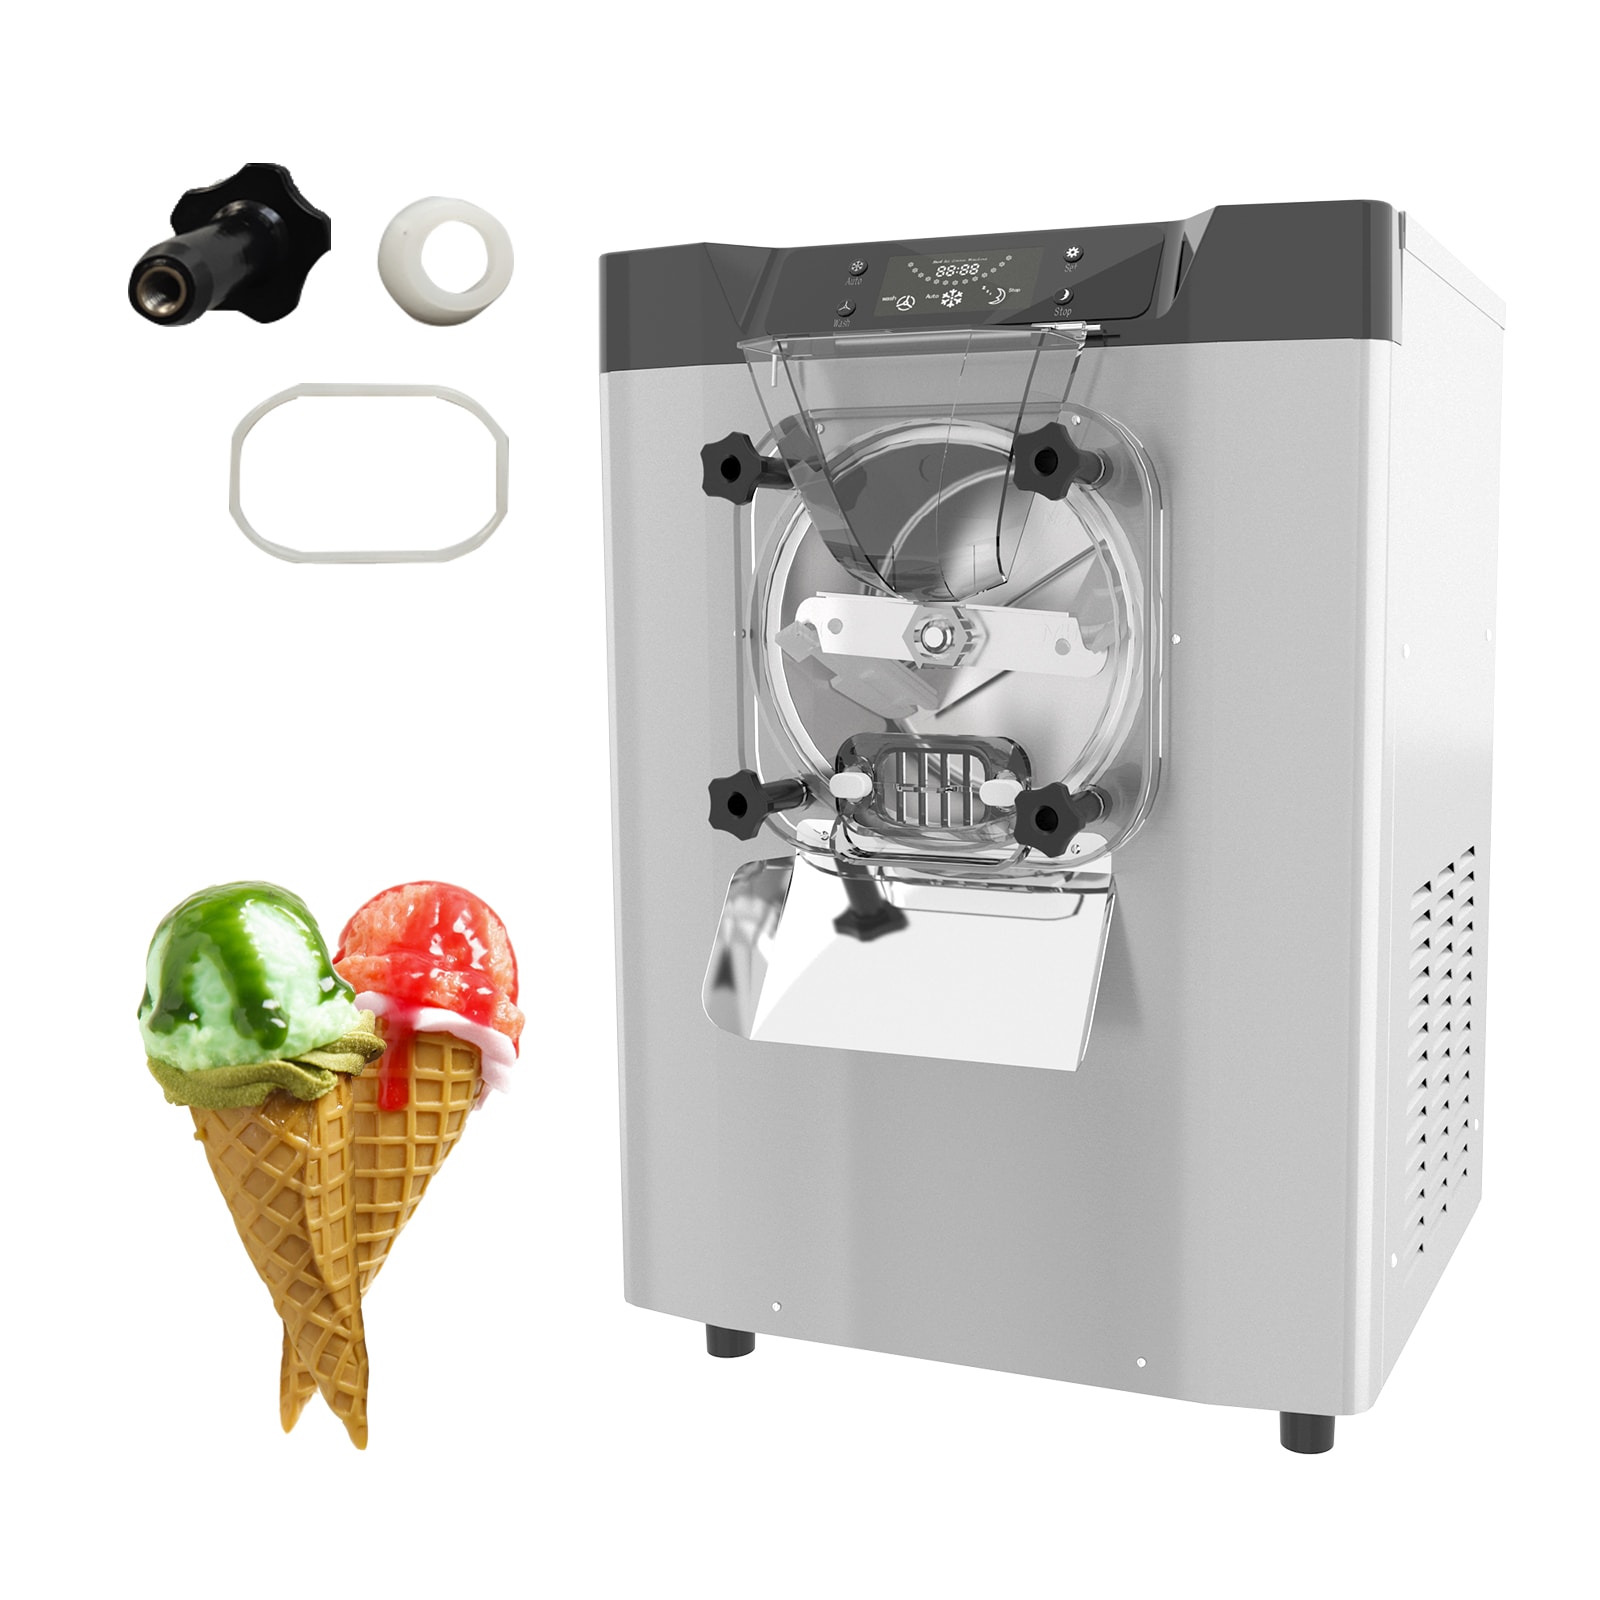 ice cream, sorbet, frozen yogurt maker 1.5qt - Whisk